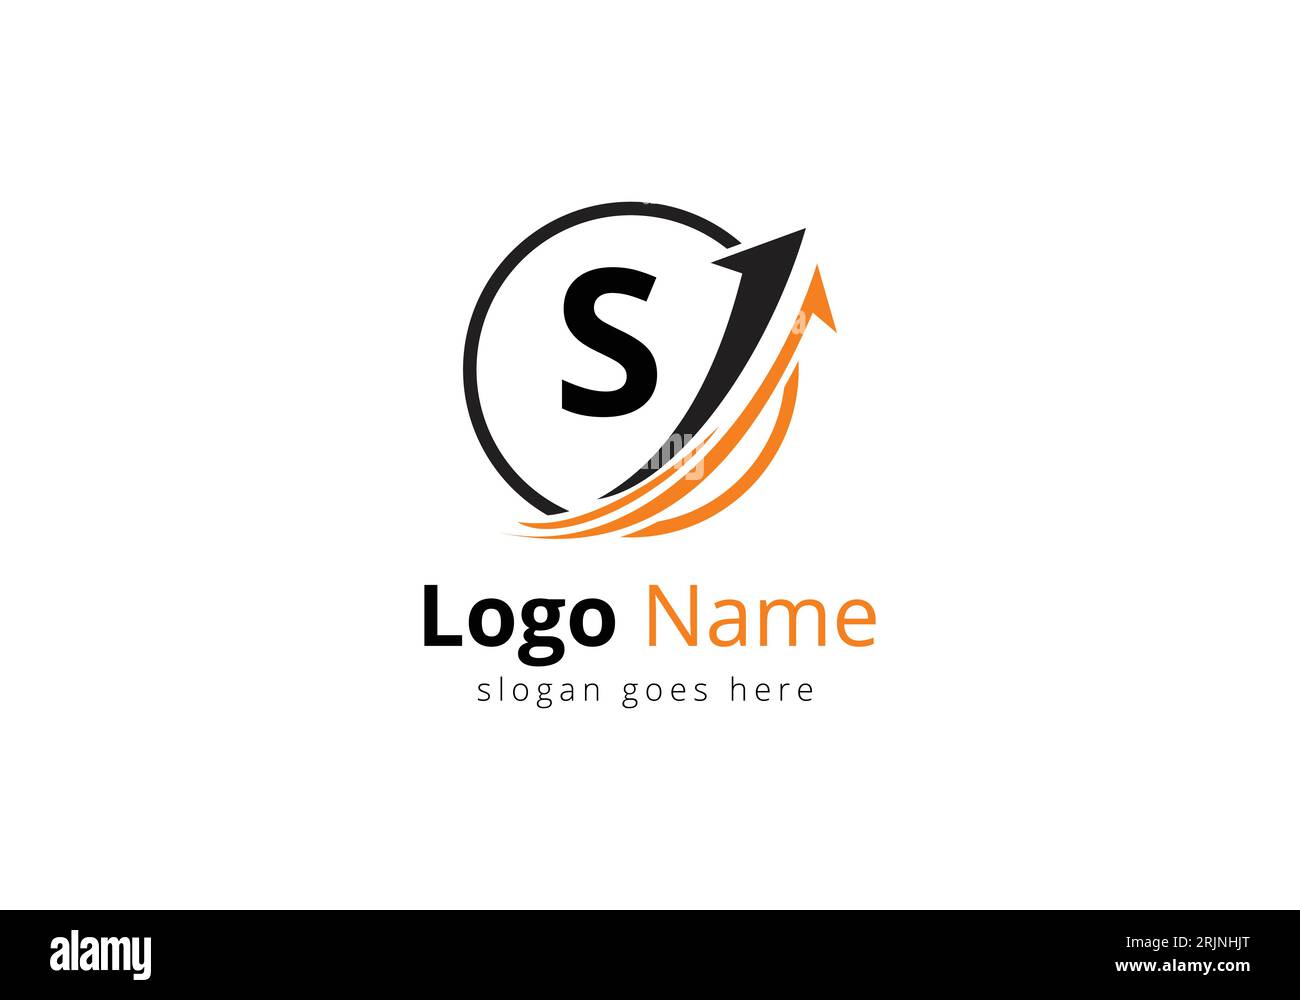 Logo Finance avec concept lettre S. Concept de logo financier ou de réussite. Logo pour l'entreprise comptable et l'identité de l'entreprise Illustration de Vecteur